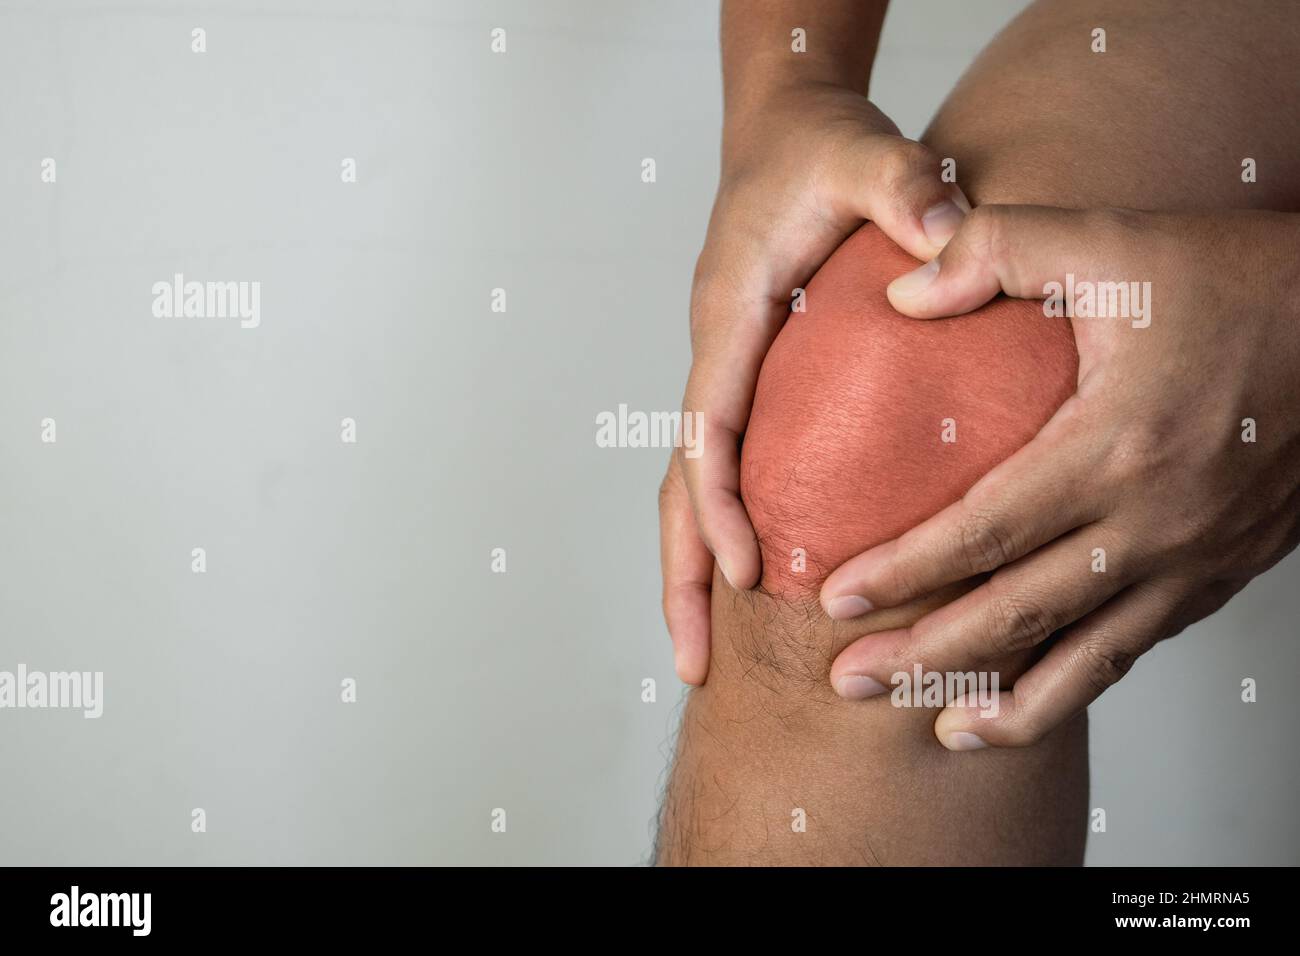 Der Mann hält seinen Schmerzpunkt am Kniegelenk. Der rote Punkt zeigt die Verletzungsposition an. Nahaufnahme von vorne. Stockfoto